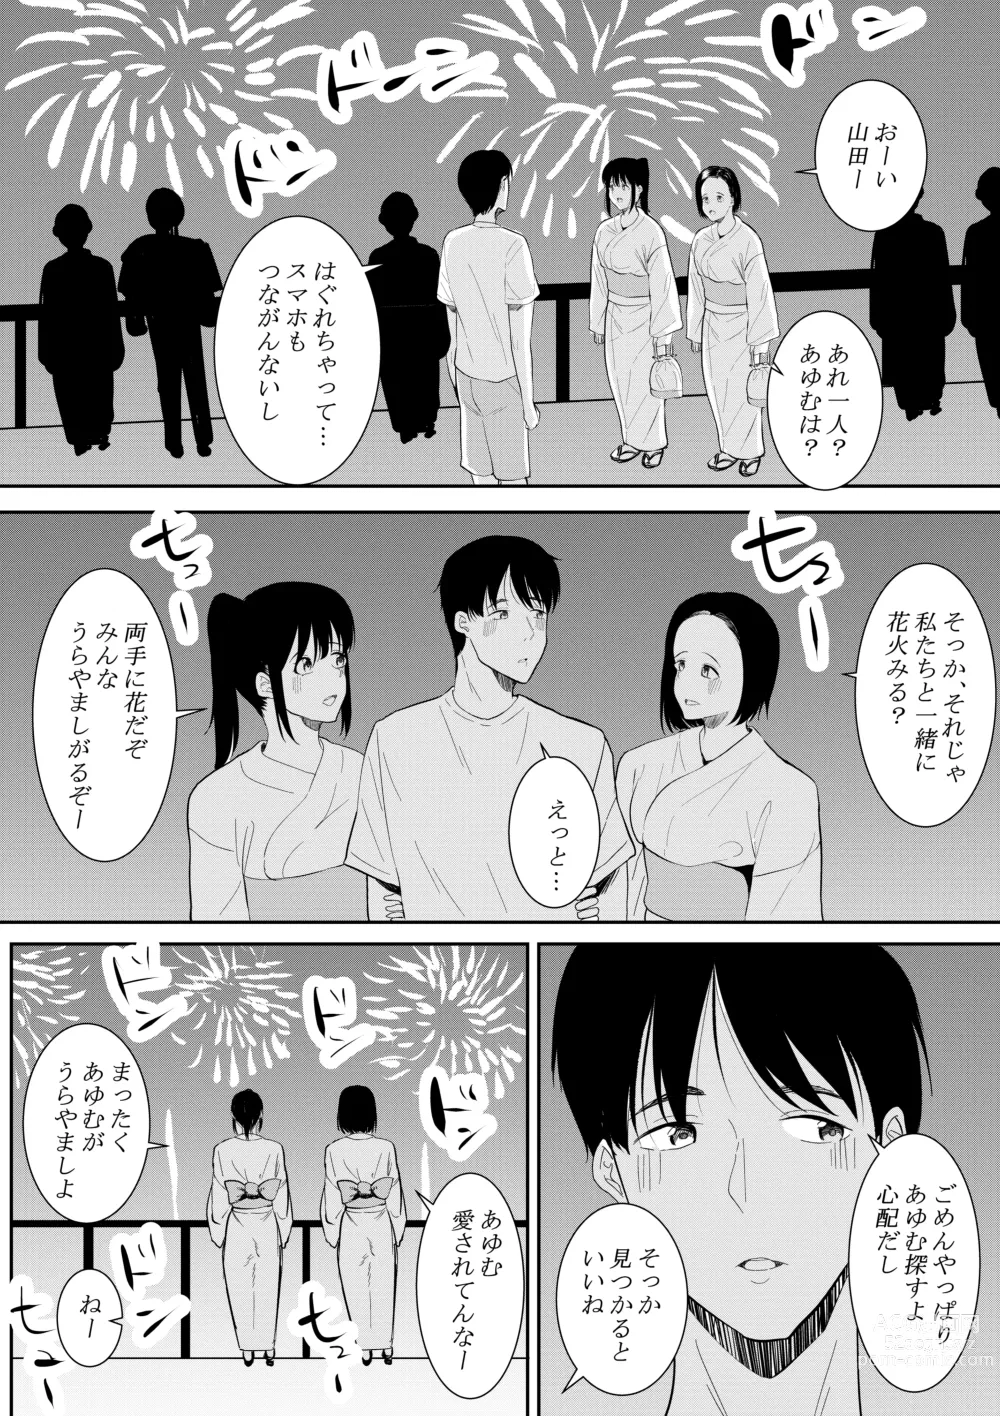 Page 54 of doujinshi Nigatena Aitsu ni Benkyou wo Oshieru Koto ni Natte…